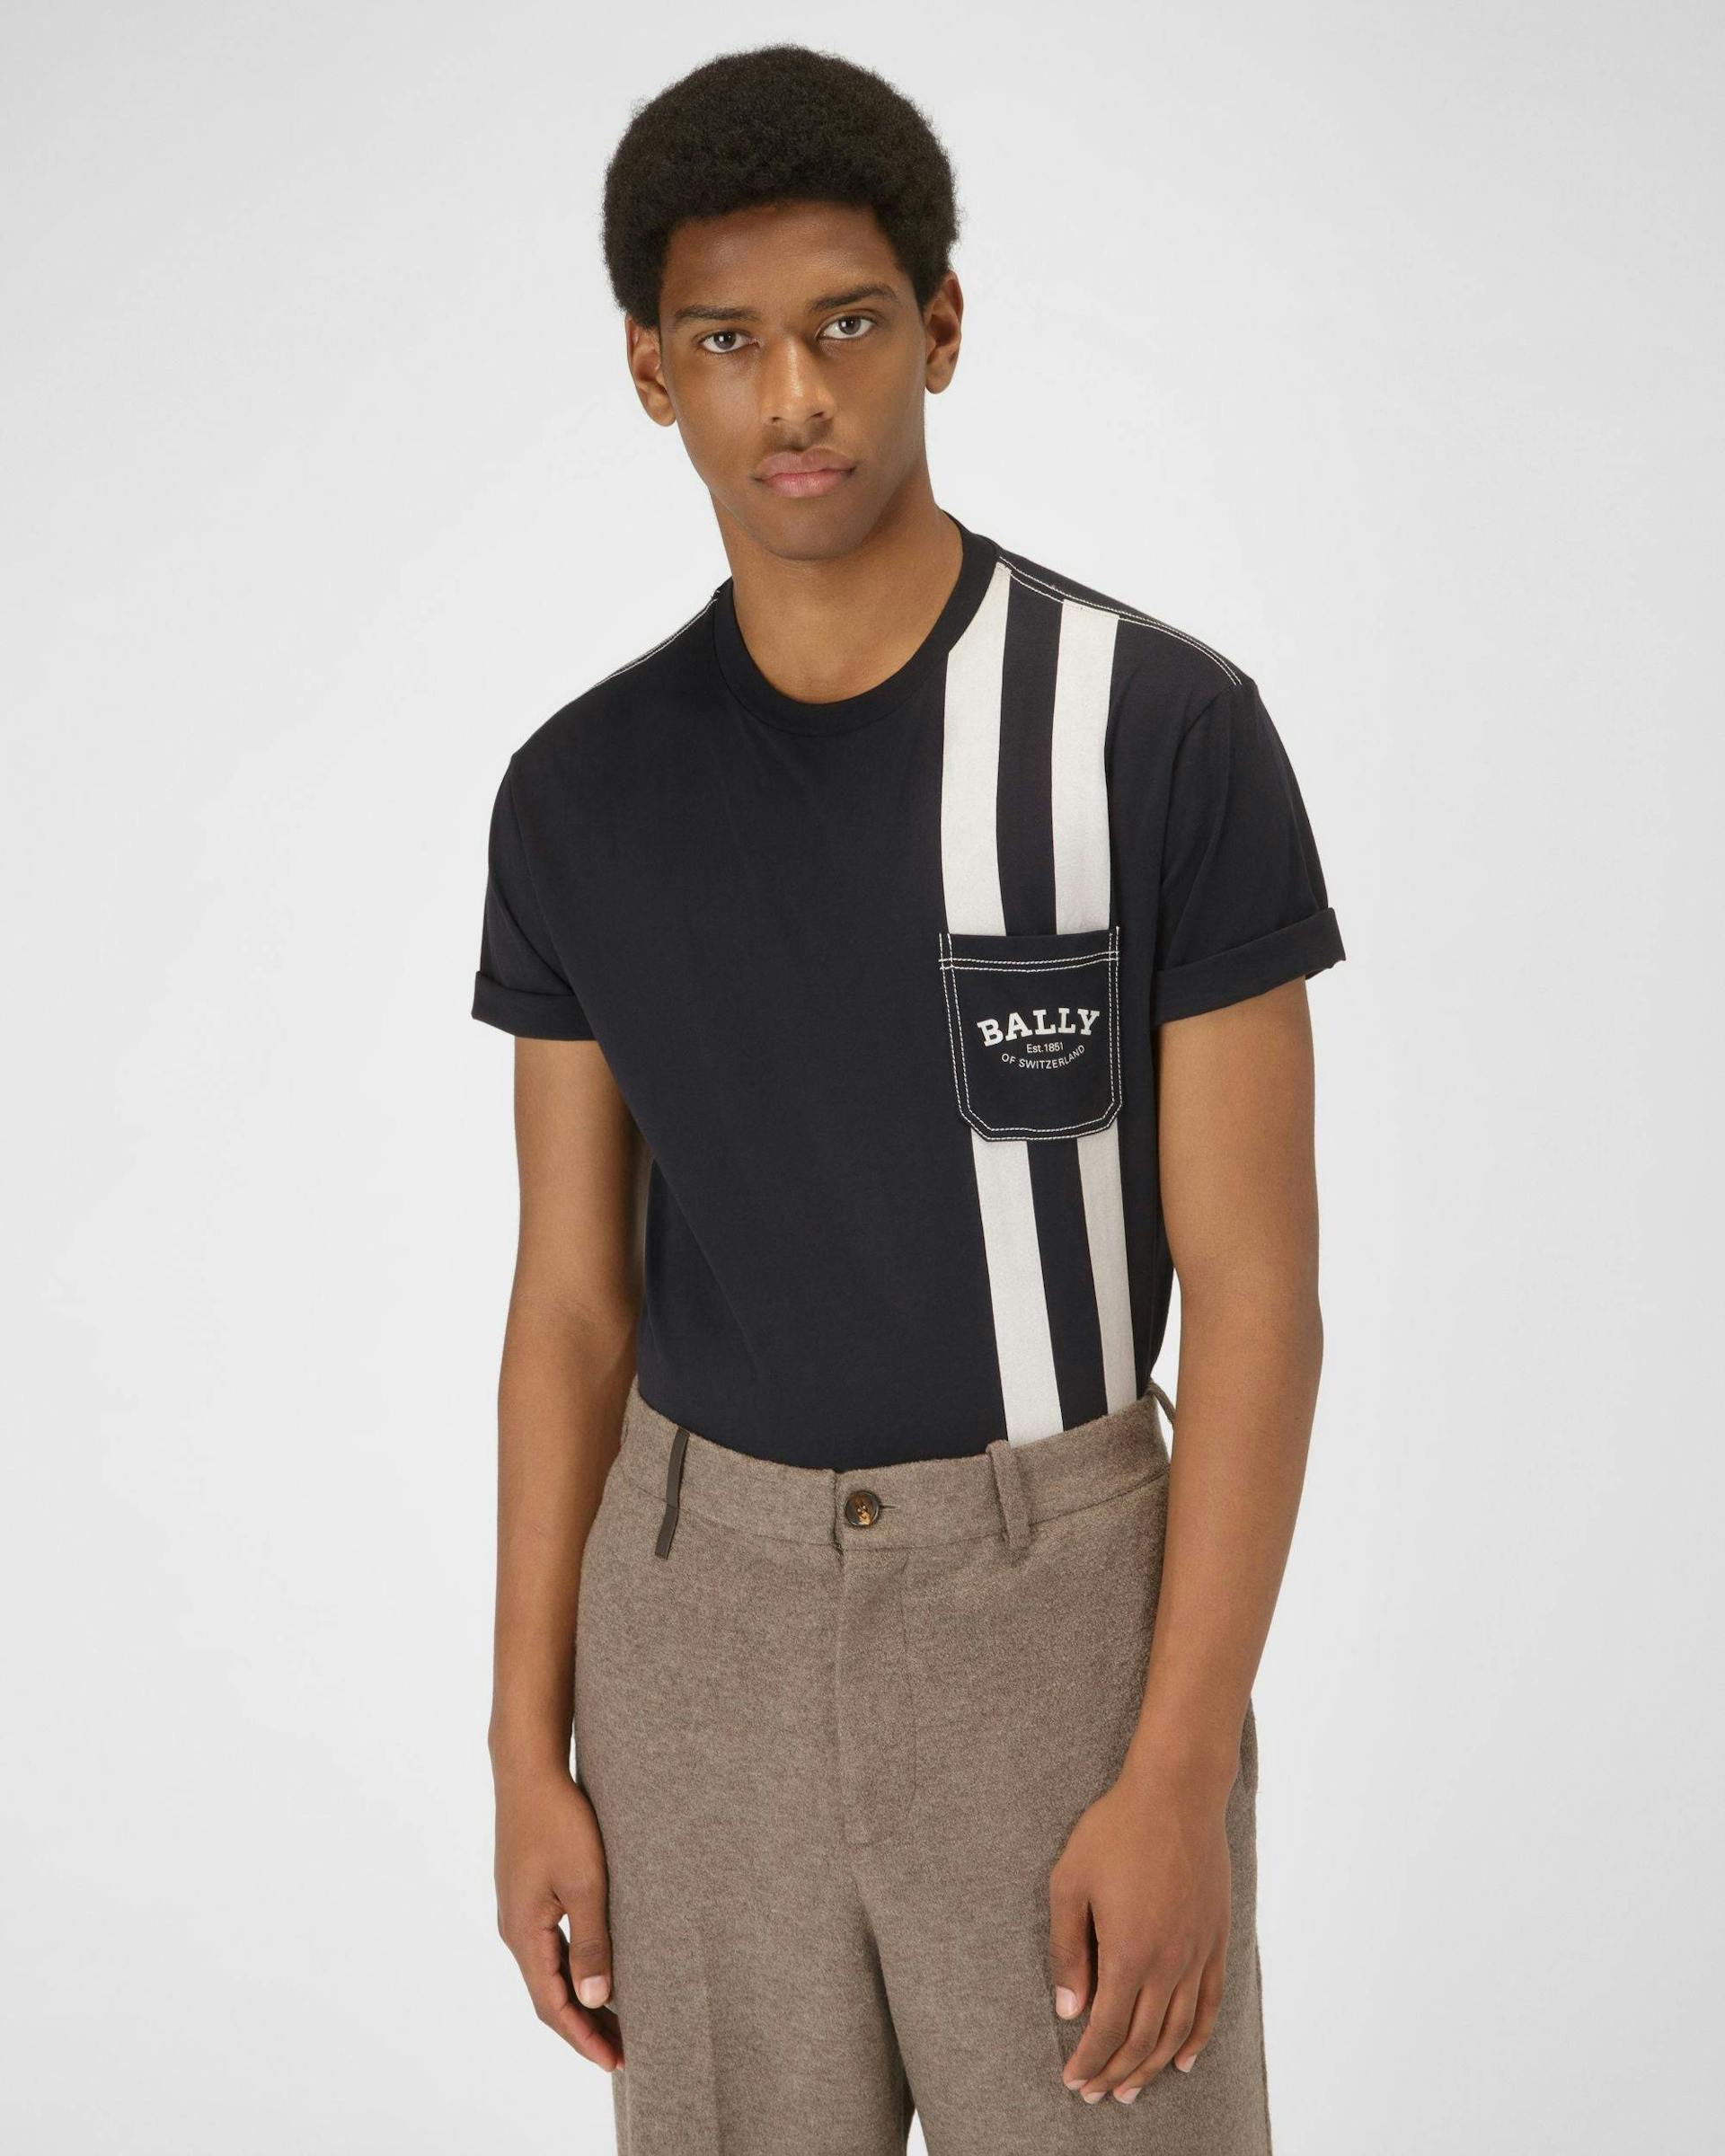 T-Shirt Con Bally Stripe - Bally